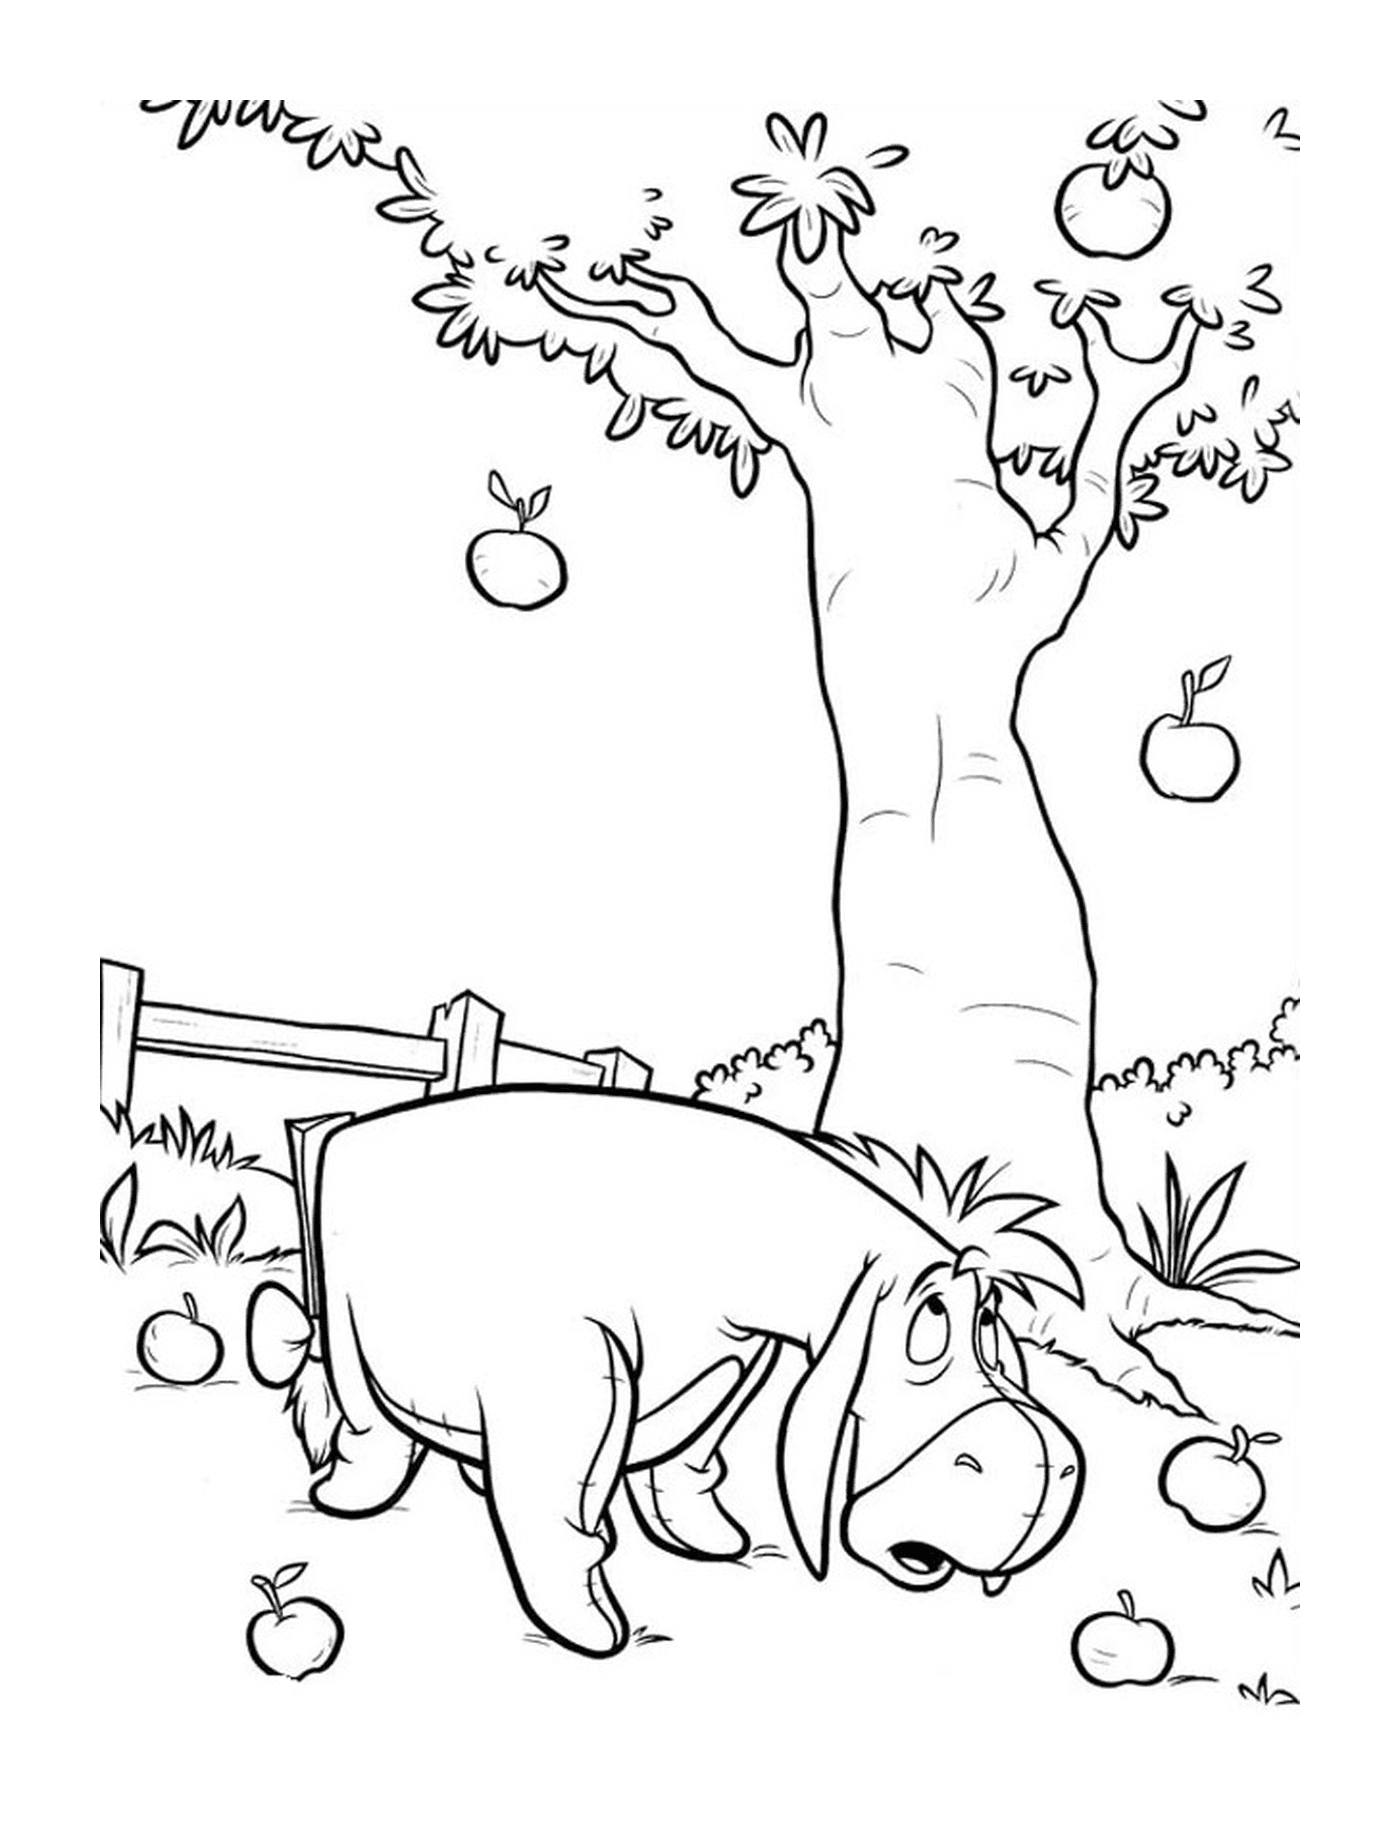  Um hipopótamo ao lado de uma macieira 